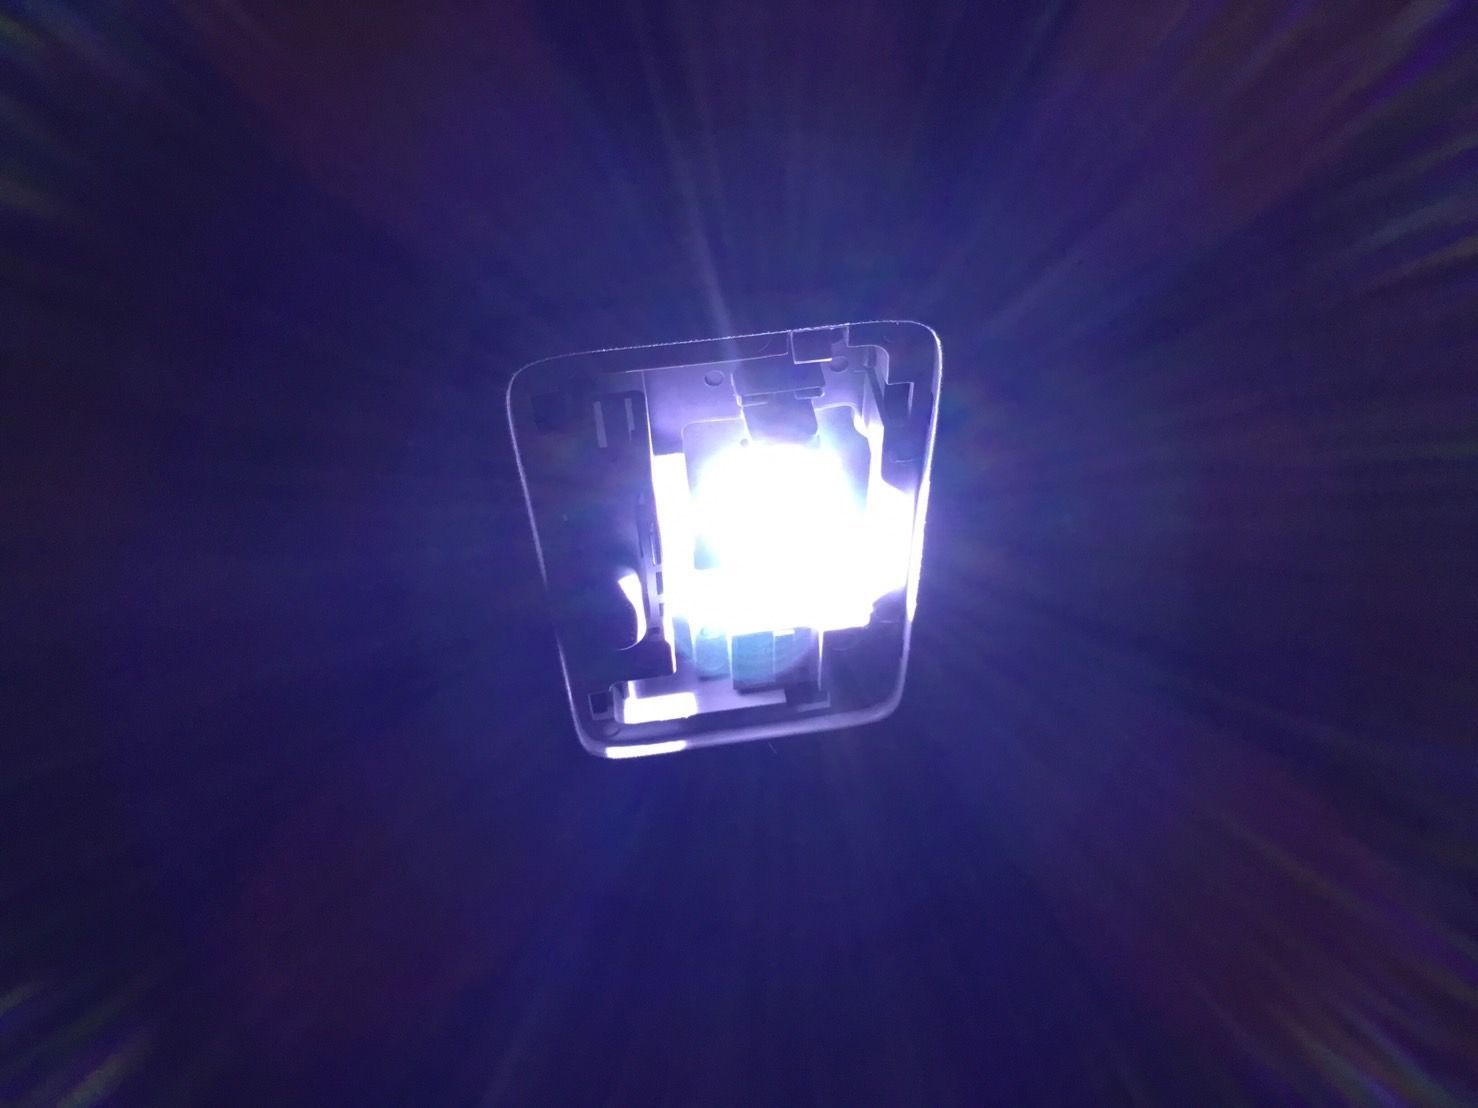 U14 ブルーバード 超豪華版 適合パーツ T10 LED ルームランプ ナンバー灯 読書灯 ウェッジ球 日産 パーツ - メルカリ